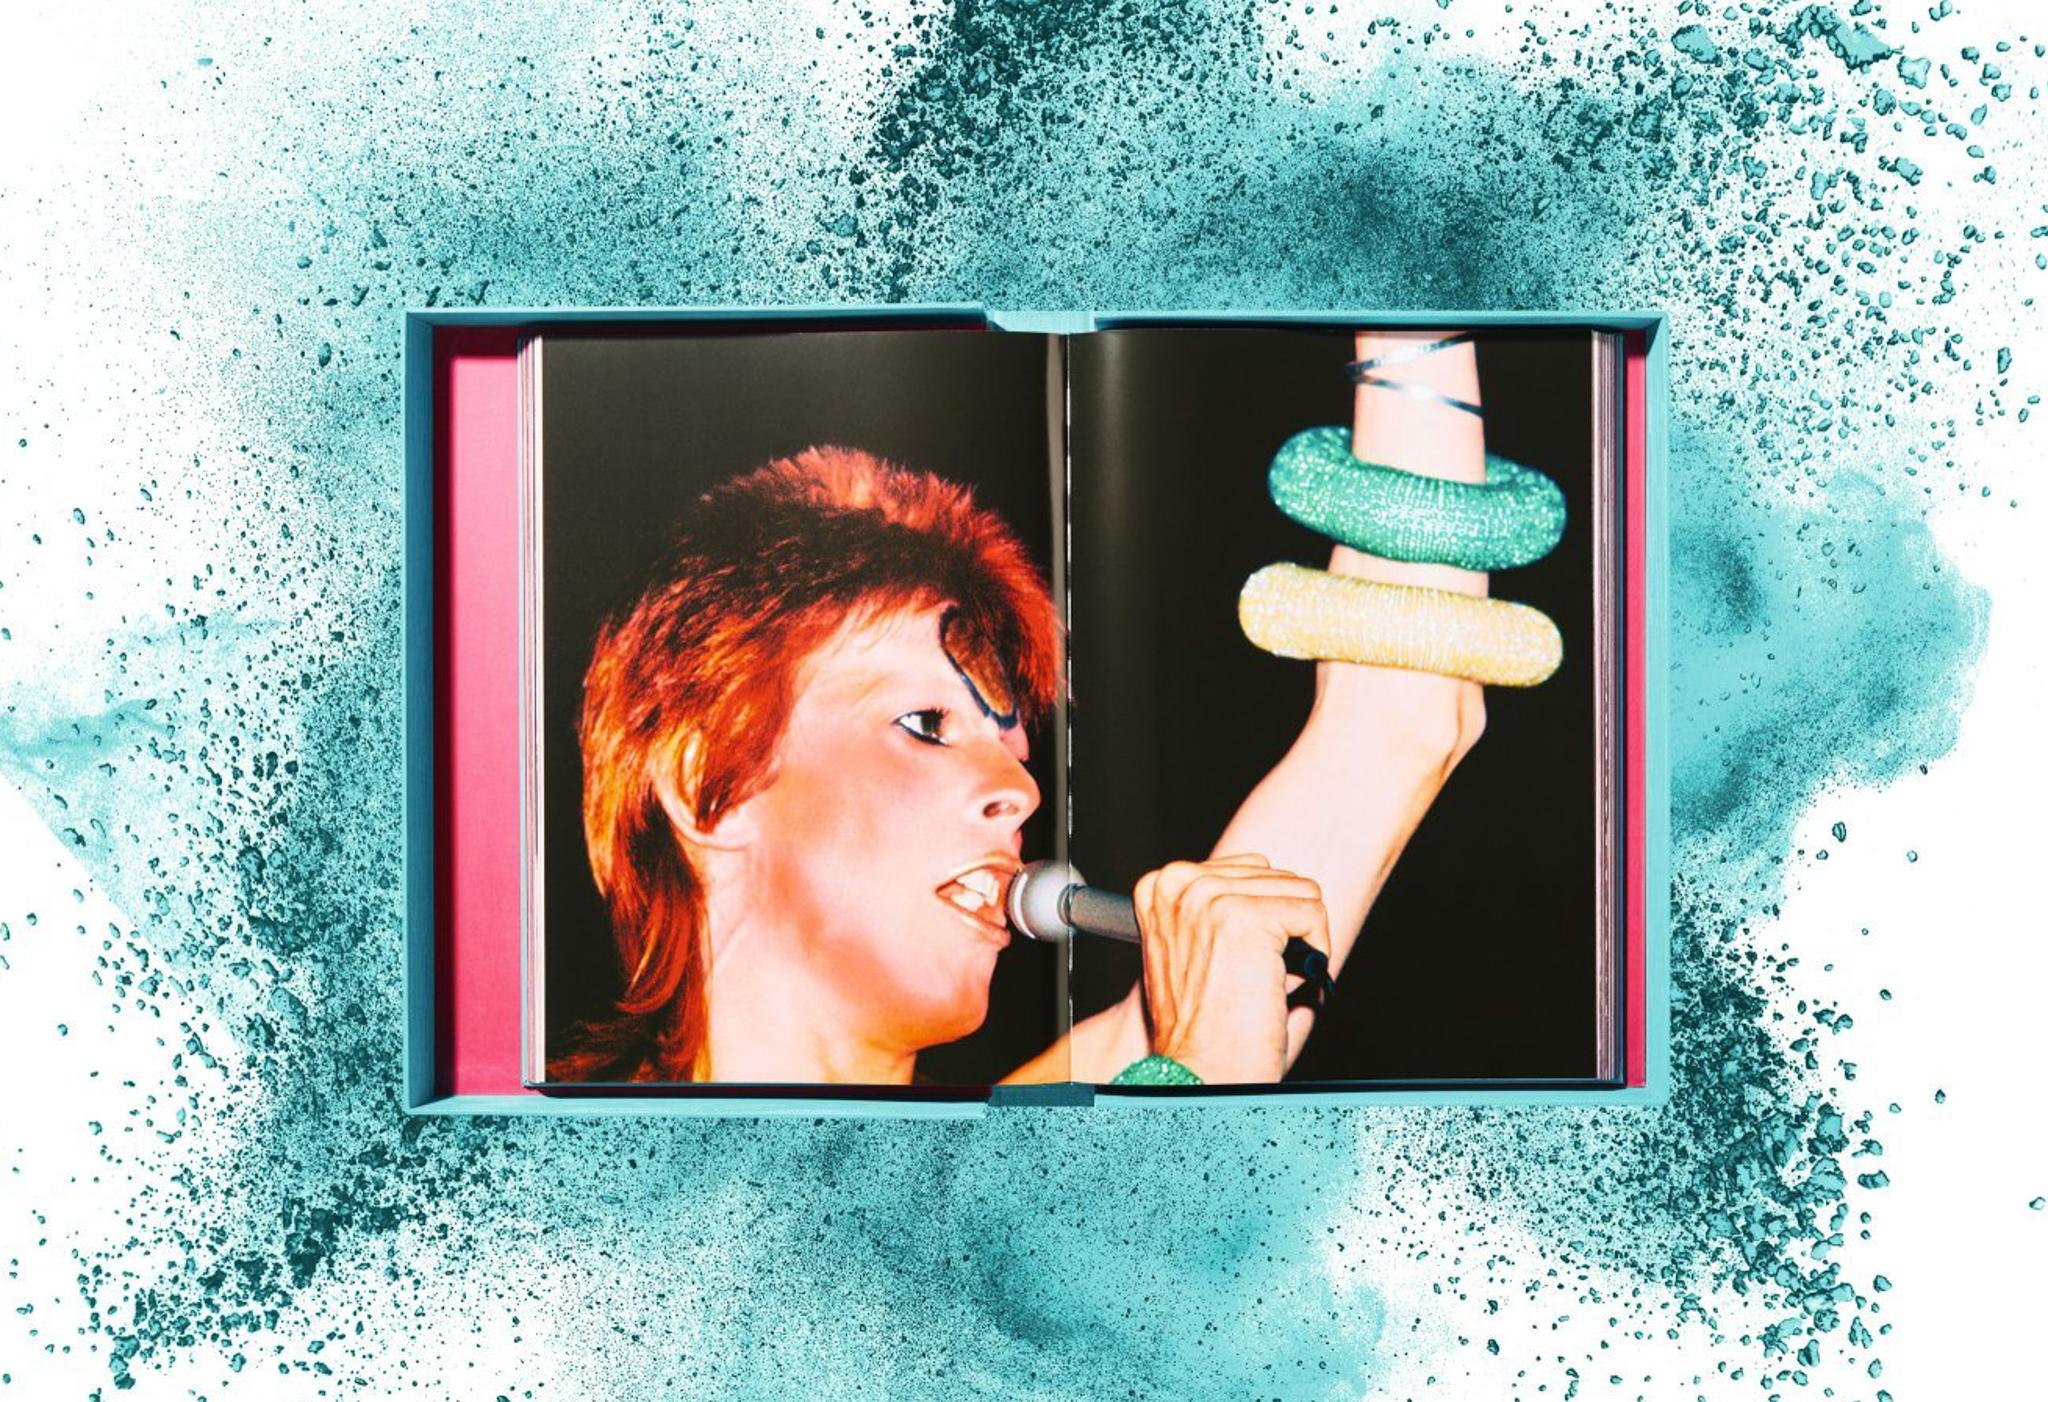 David Bowie - Édition d'art limitée TASCHEN avec impression pigmentaire signée à la main - Nouveau en vente 5